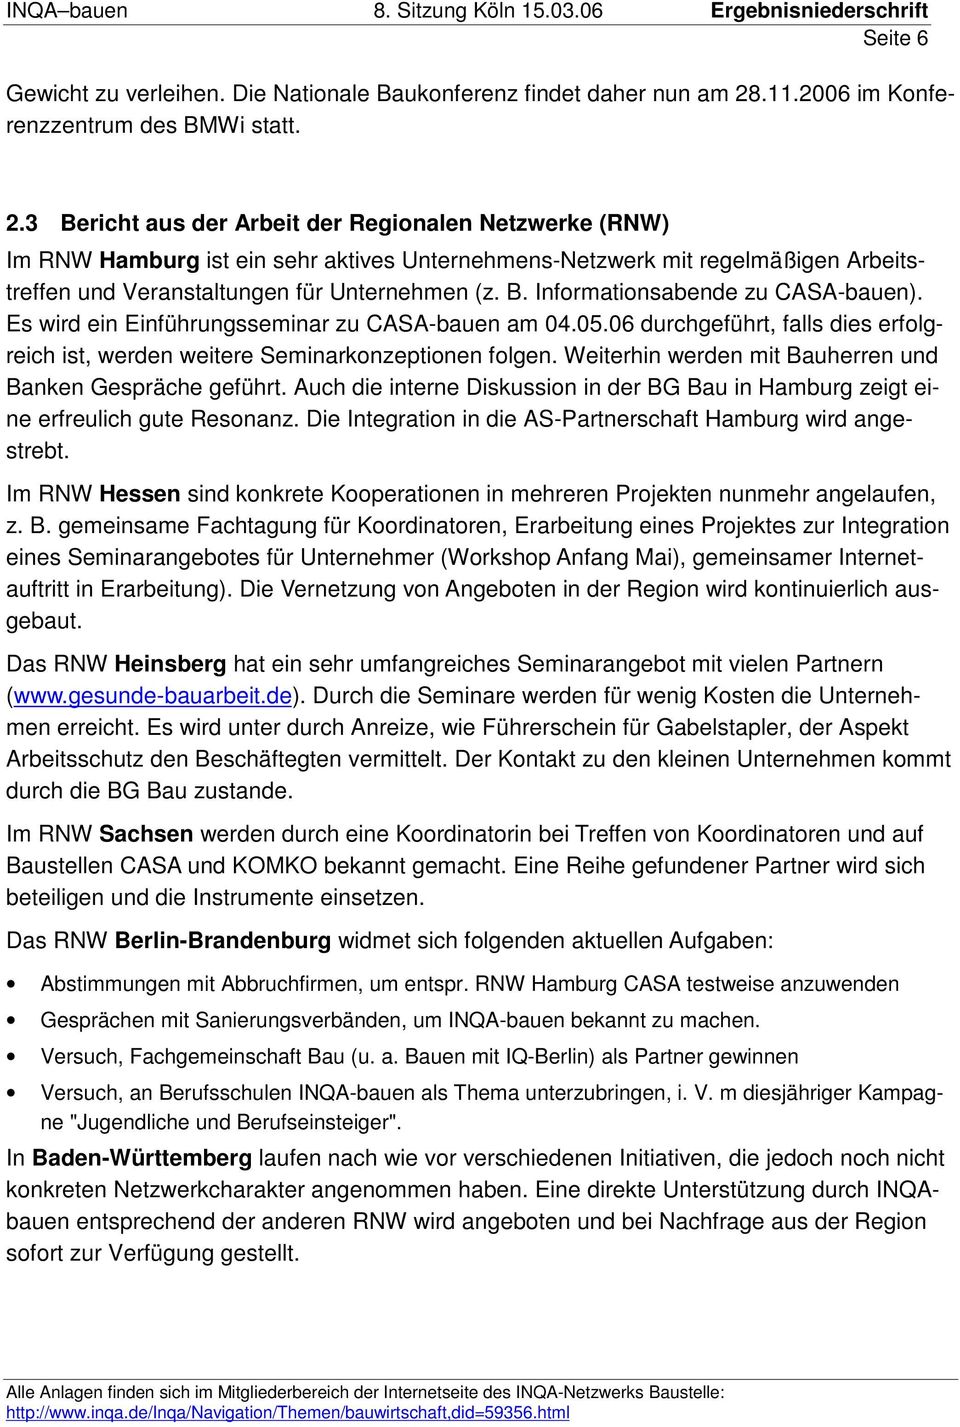 3 Bericht aus der Arbeit der Regionalen Netzwerke (RNW) Im RNW Hamburg ist ein sehr aktives Unternehmens-Netzwerk mit regelmäßigen Arbeitstreffen und Veranstaltungen für Unternehmen (z. B. Informationsabende zu CASA-bauen).